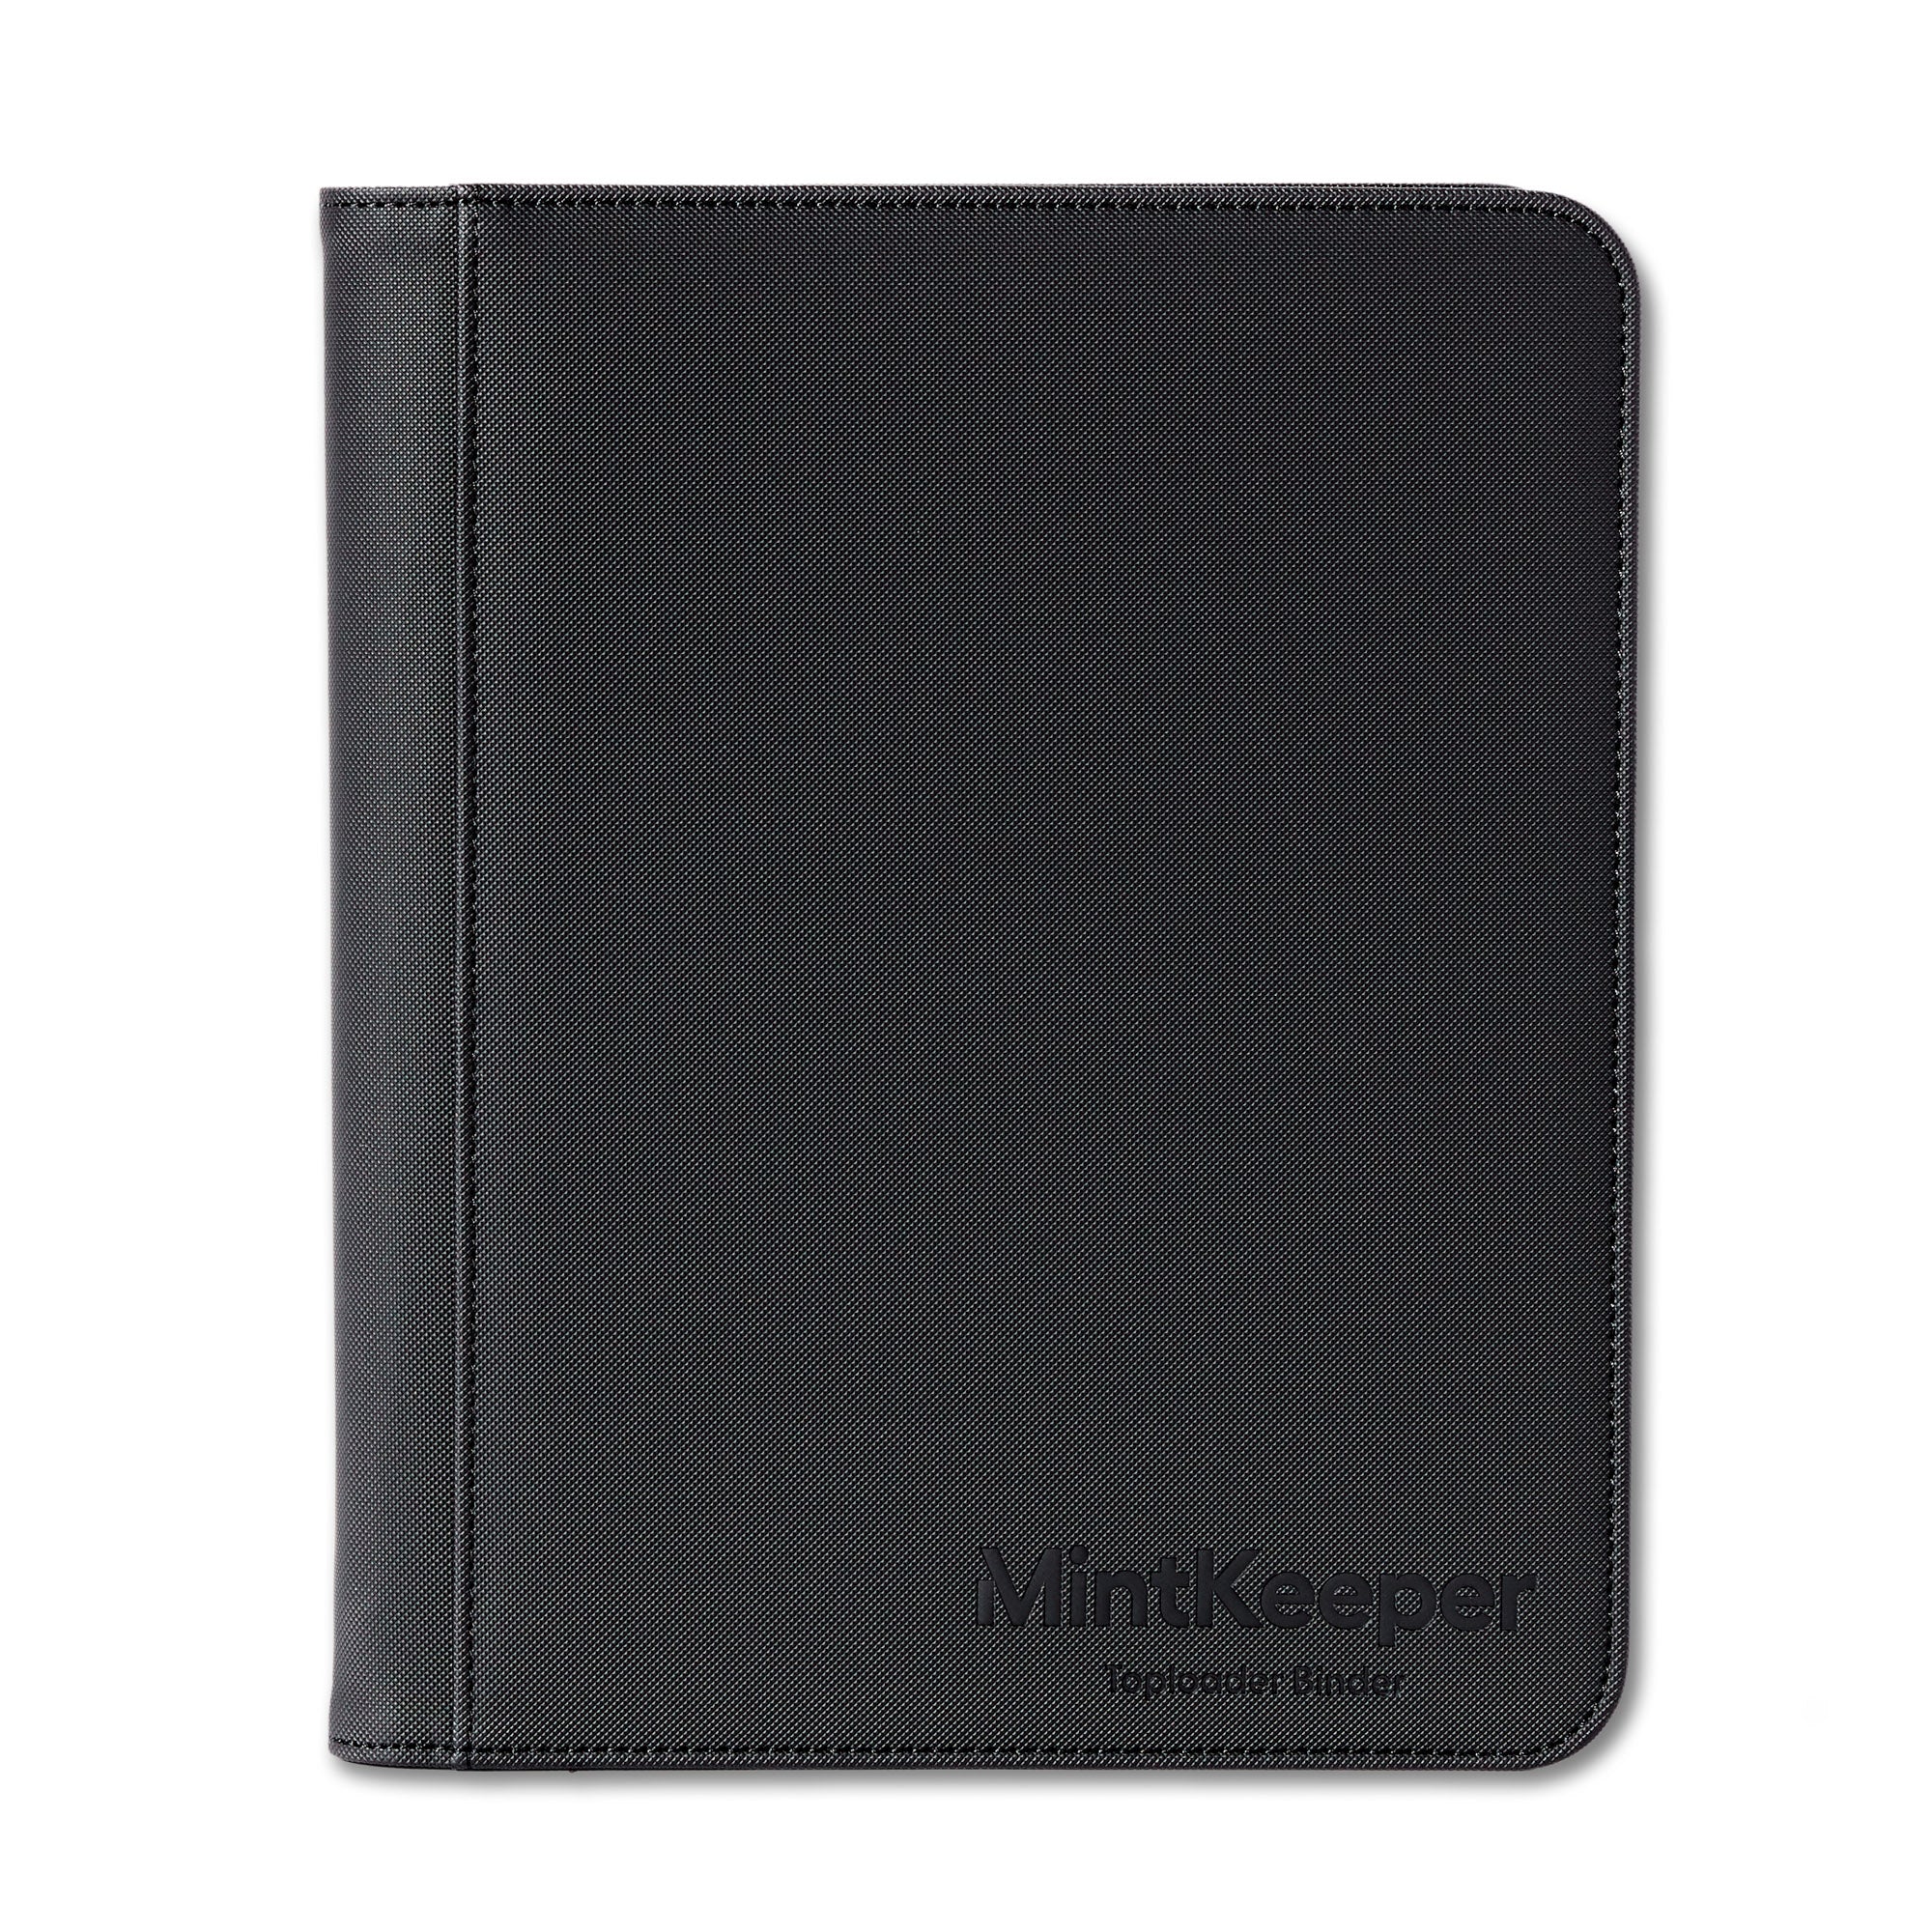 MintKeeper - Toploader Binder - 4 Pocket (NEW)